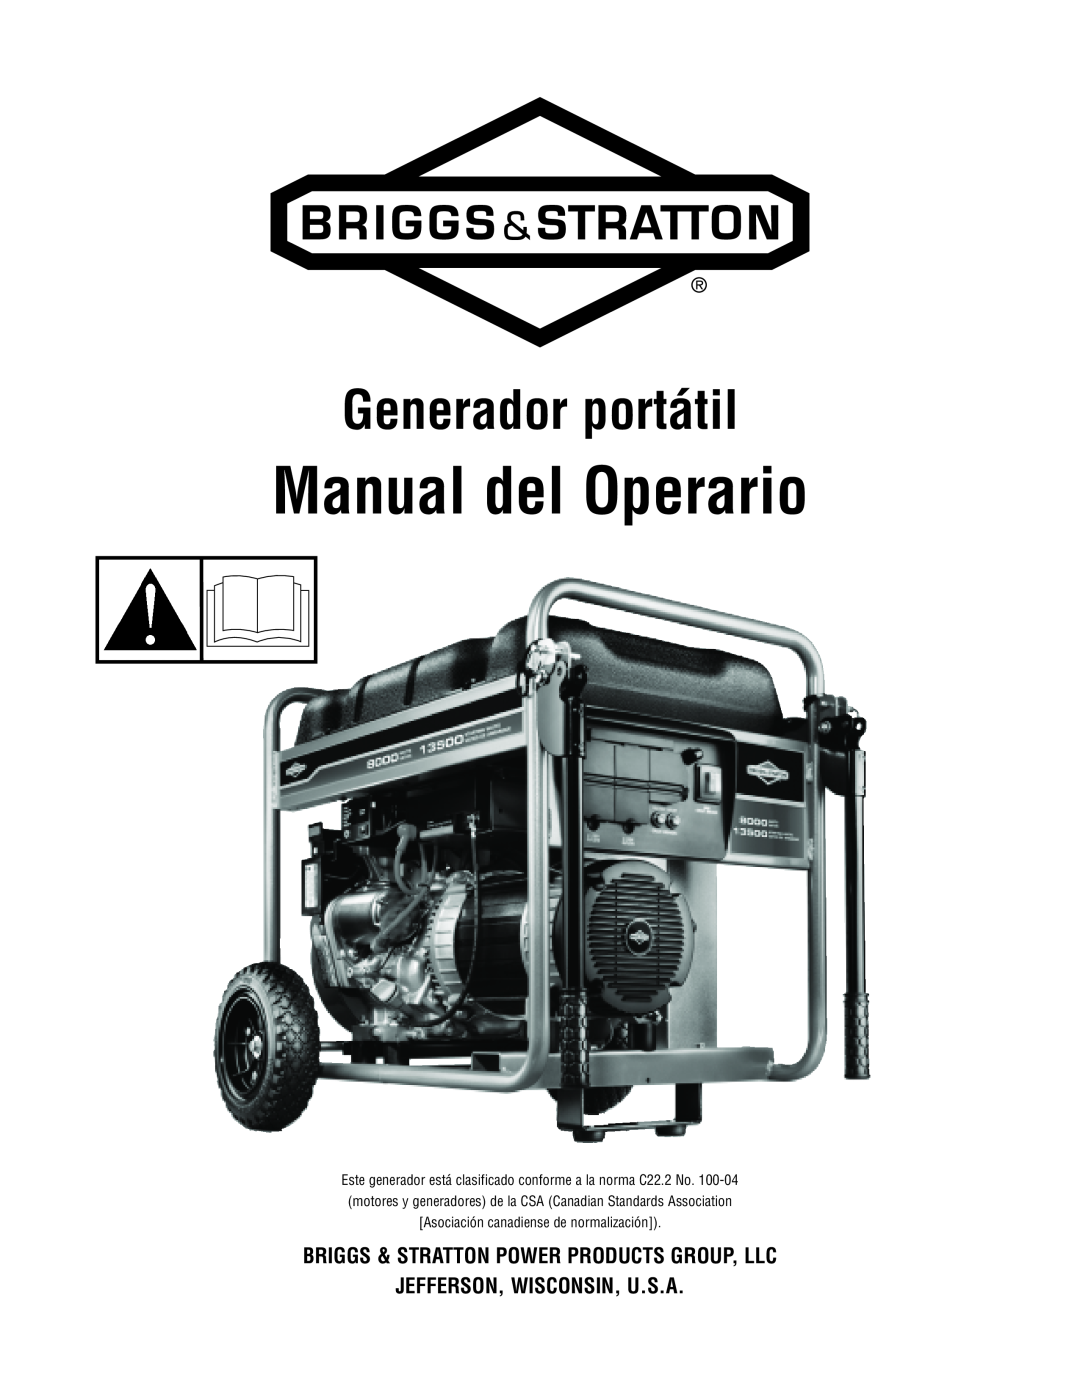 Briggs & Stratton 206405GS manual Manual del Operario, Generador portátil, Briggs & Stratton Power Products Group, Llc 